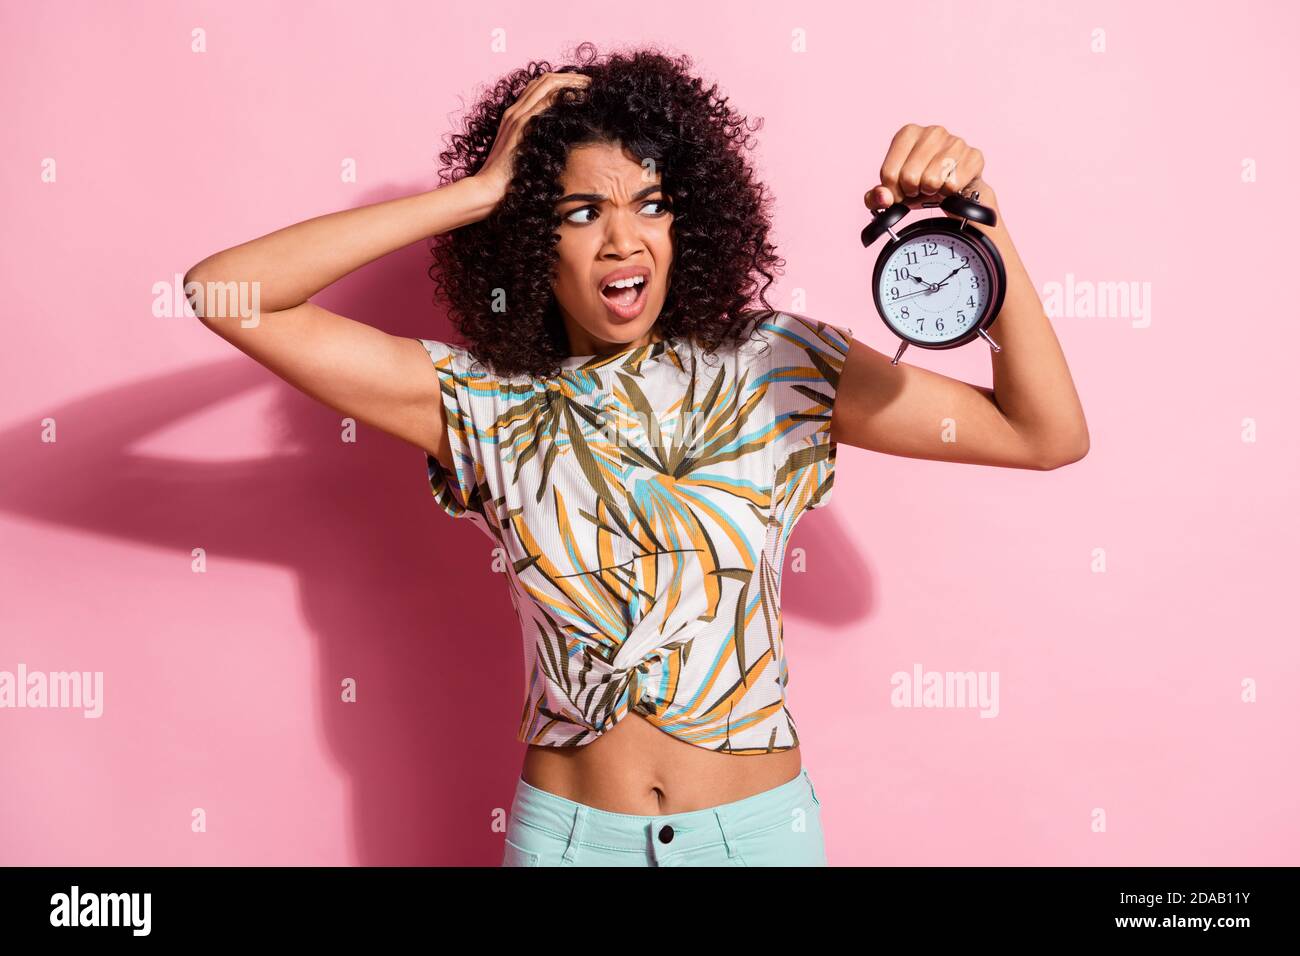 Portrait Foto von unsicher lockig afrikanische Frau zeigt Uhr Grimacing Missverständnis isoliert auf pastellrosa Farbe Hintergrund Stockfoto